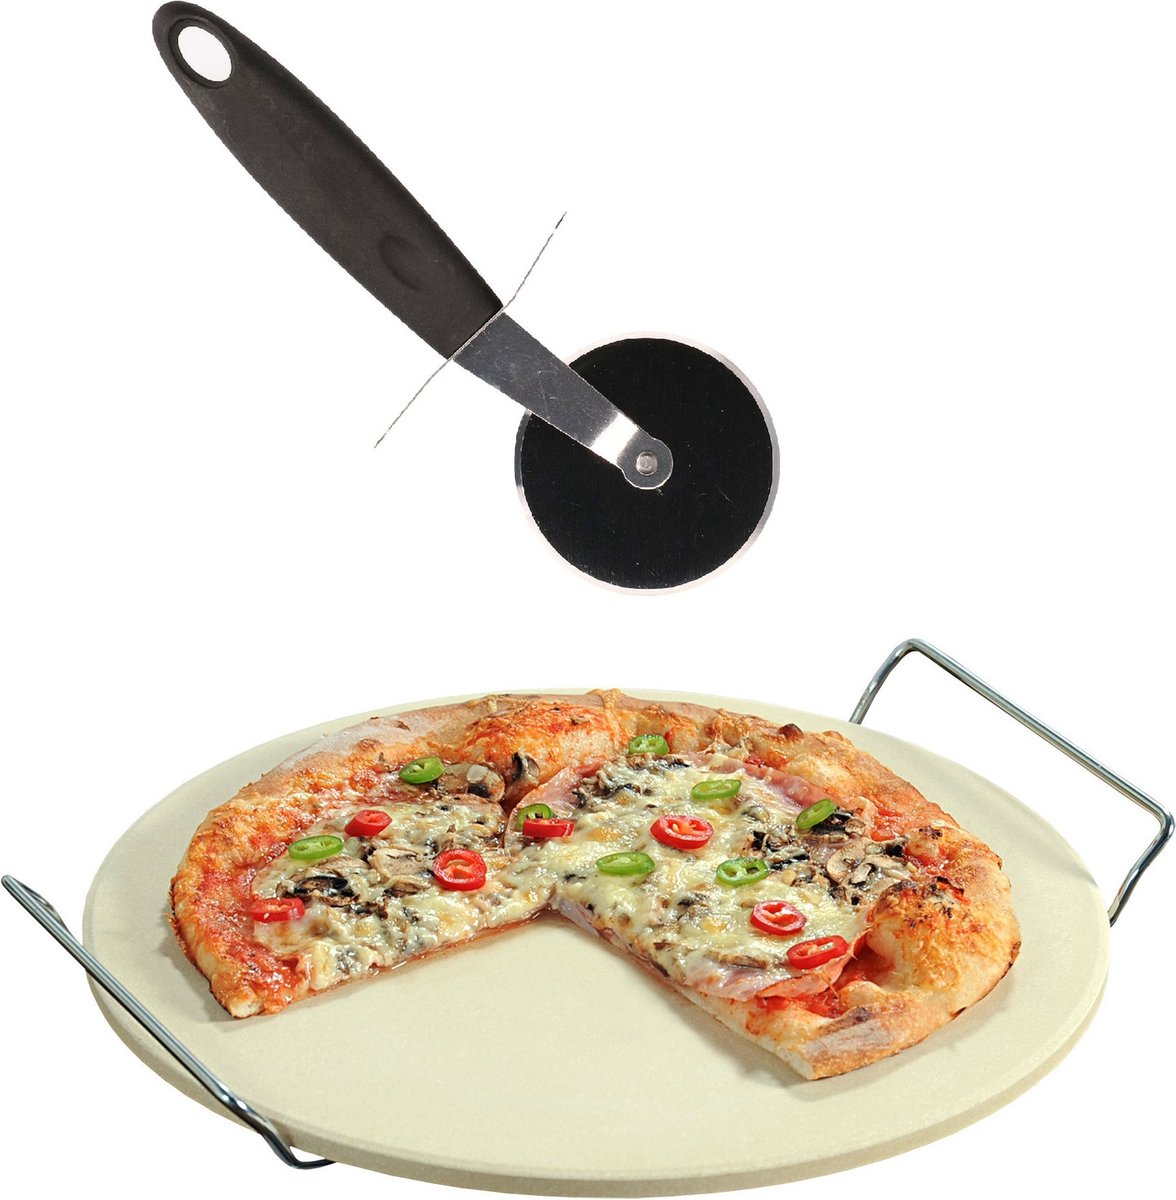 Keramieken pizzasteen rond 33 cm met handvaten - Met pizza snijder 19 cm - BBQ/oven pizza stone